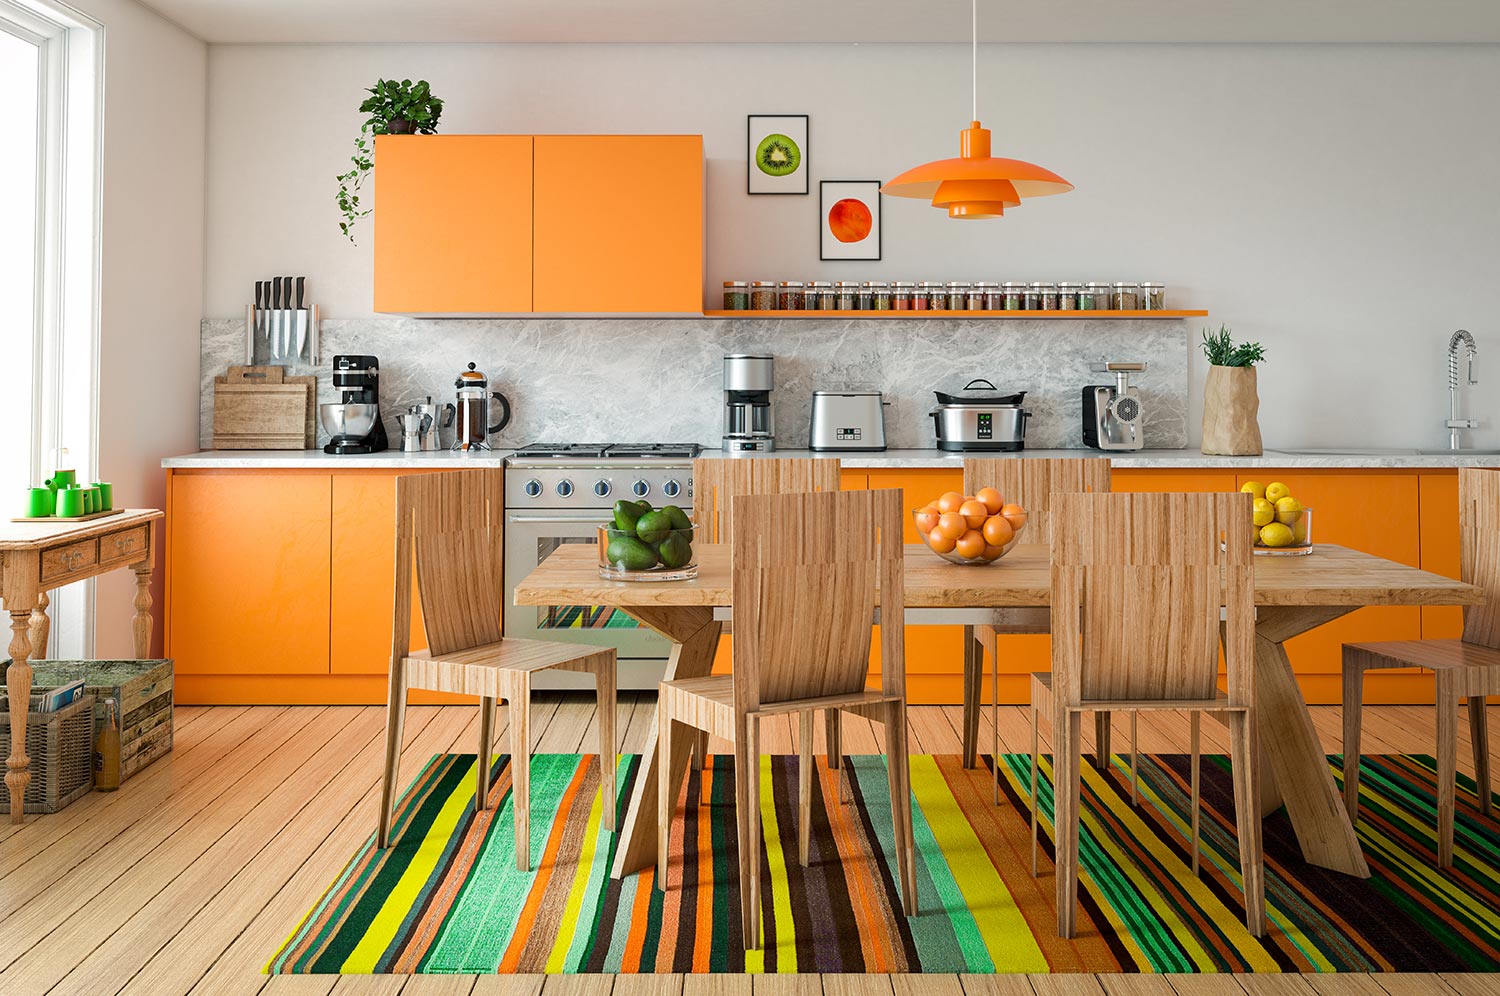 Digitally generated contemporary domestic kitchen interior design